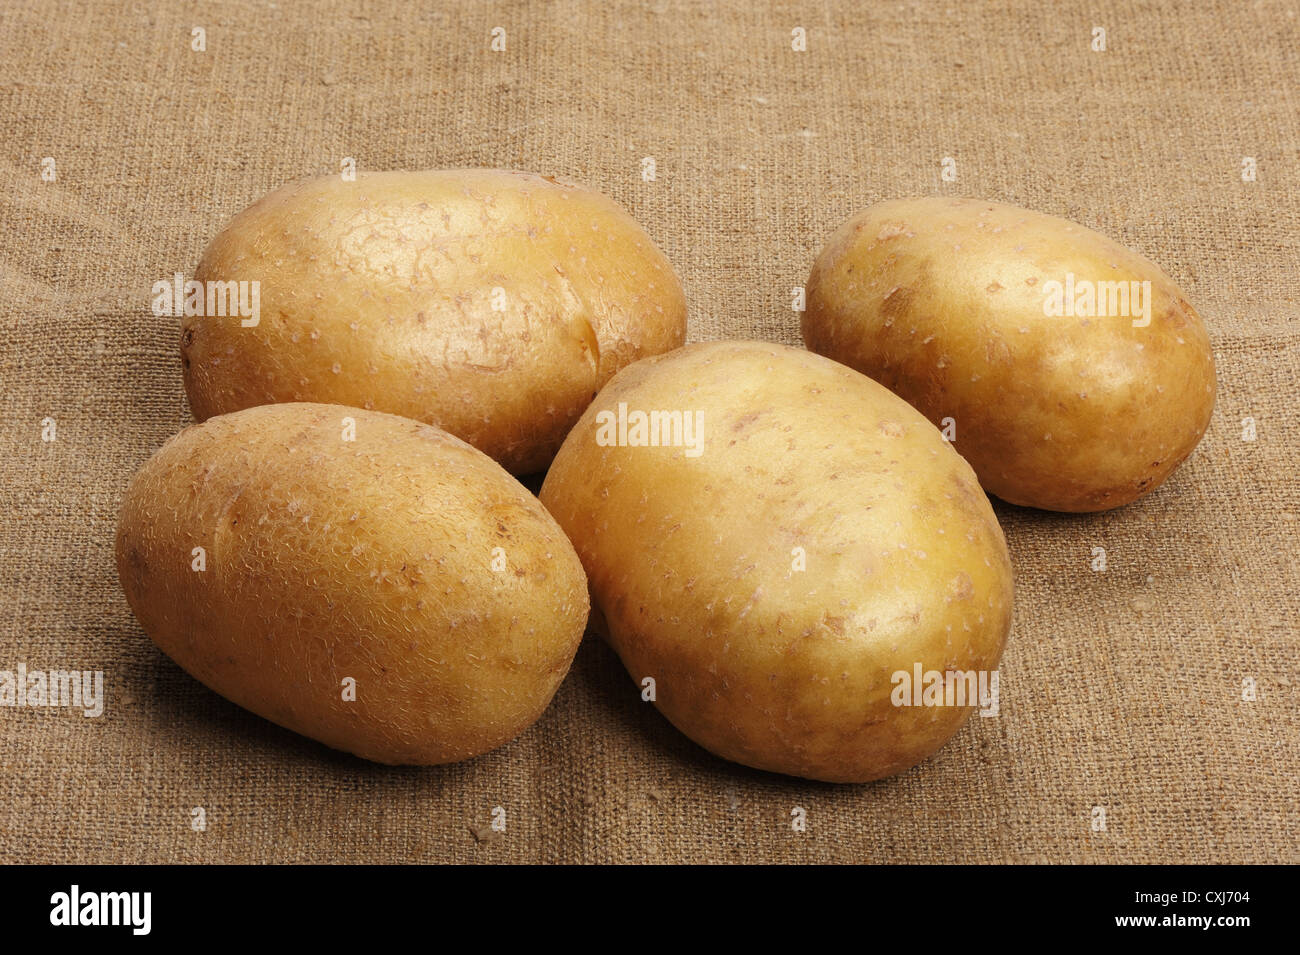 Les pommes de terre sur un limogeage Banque D'Images